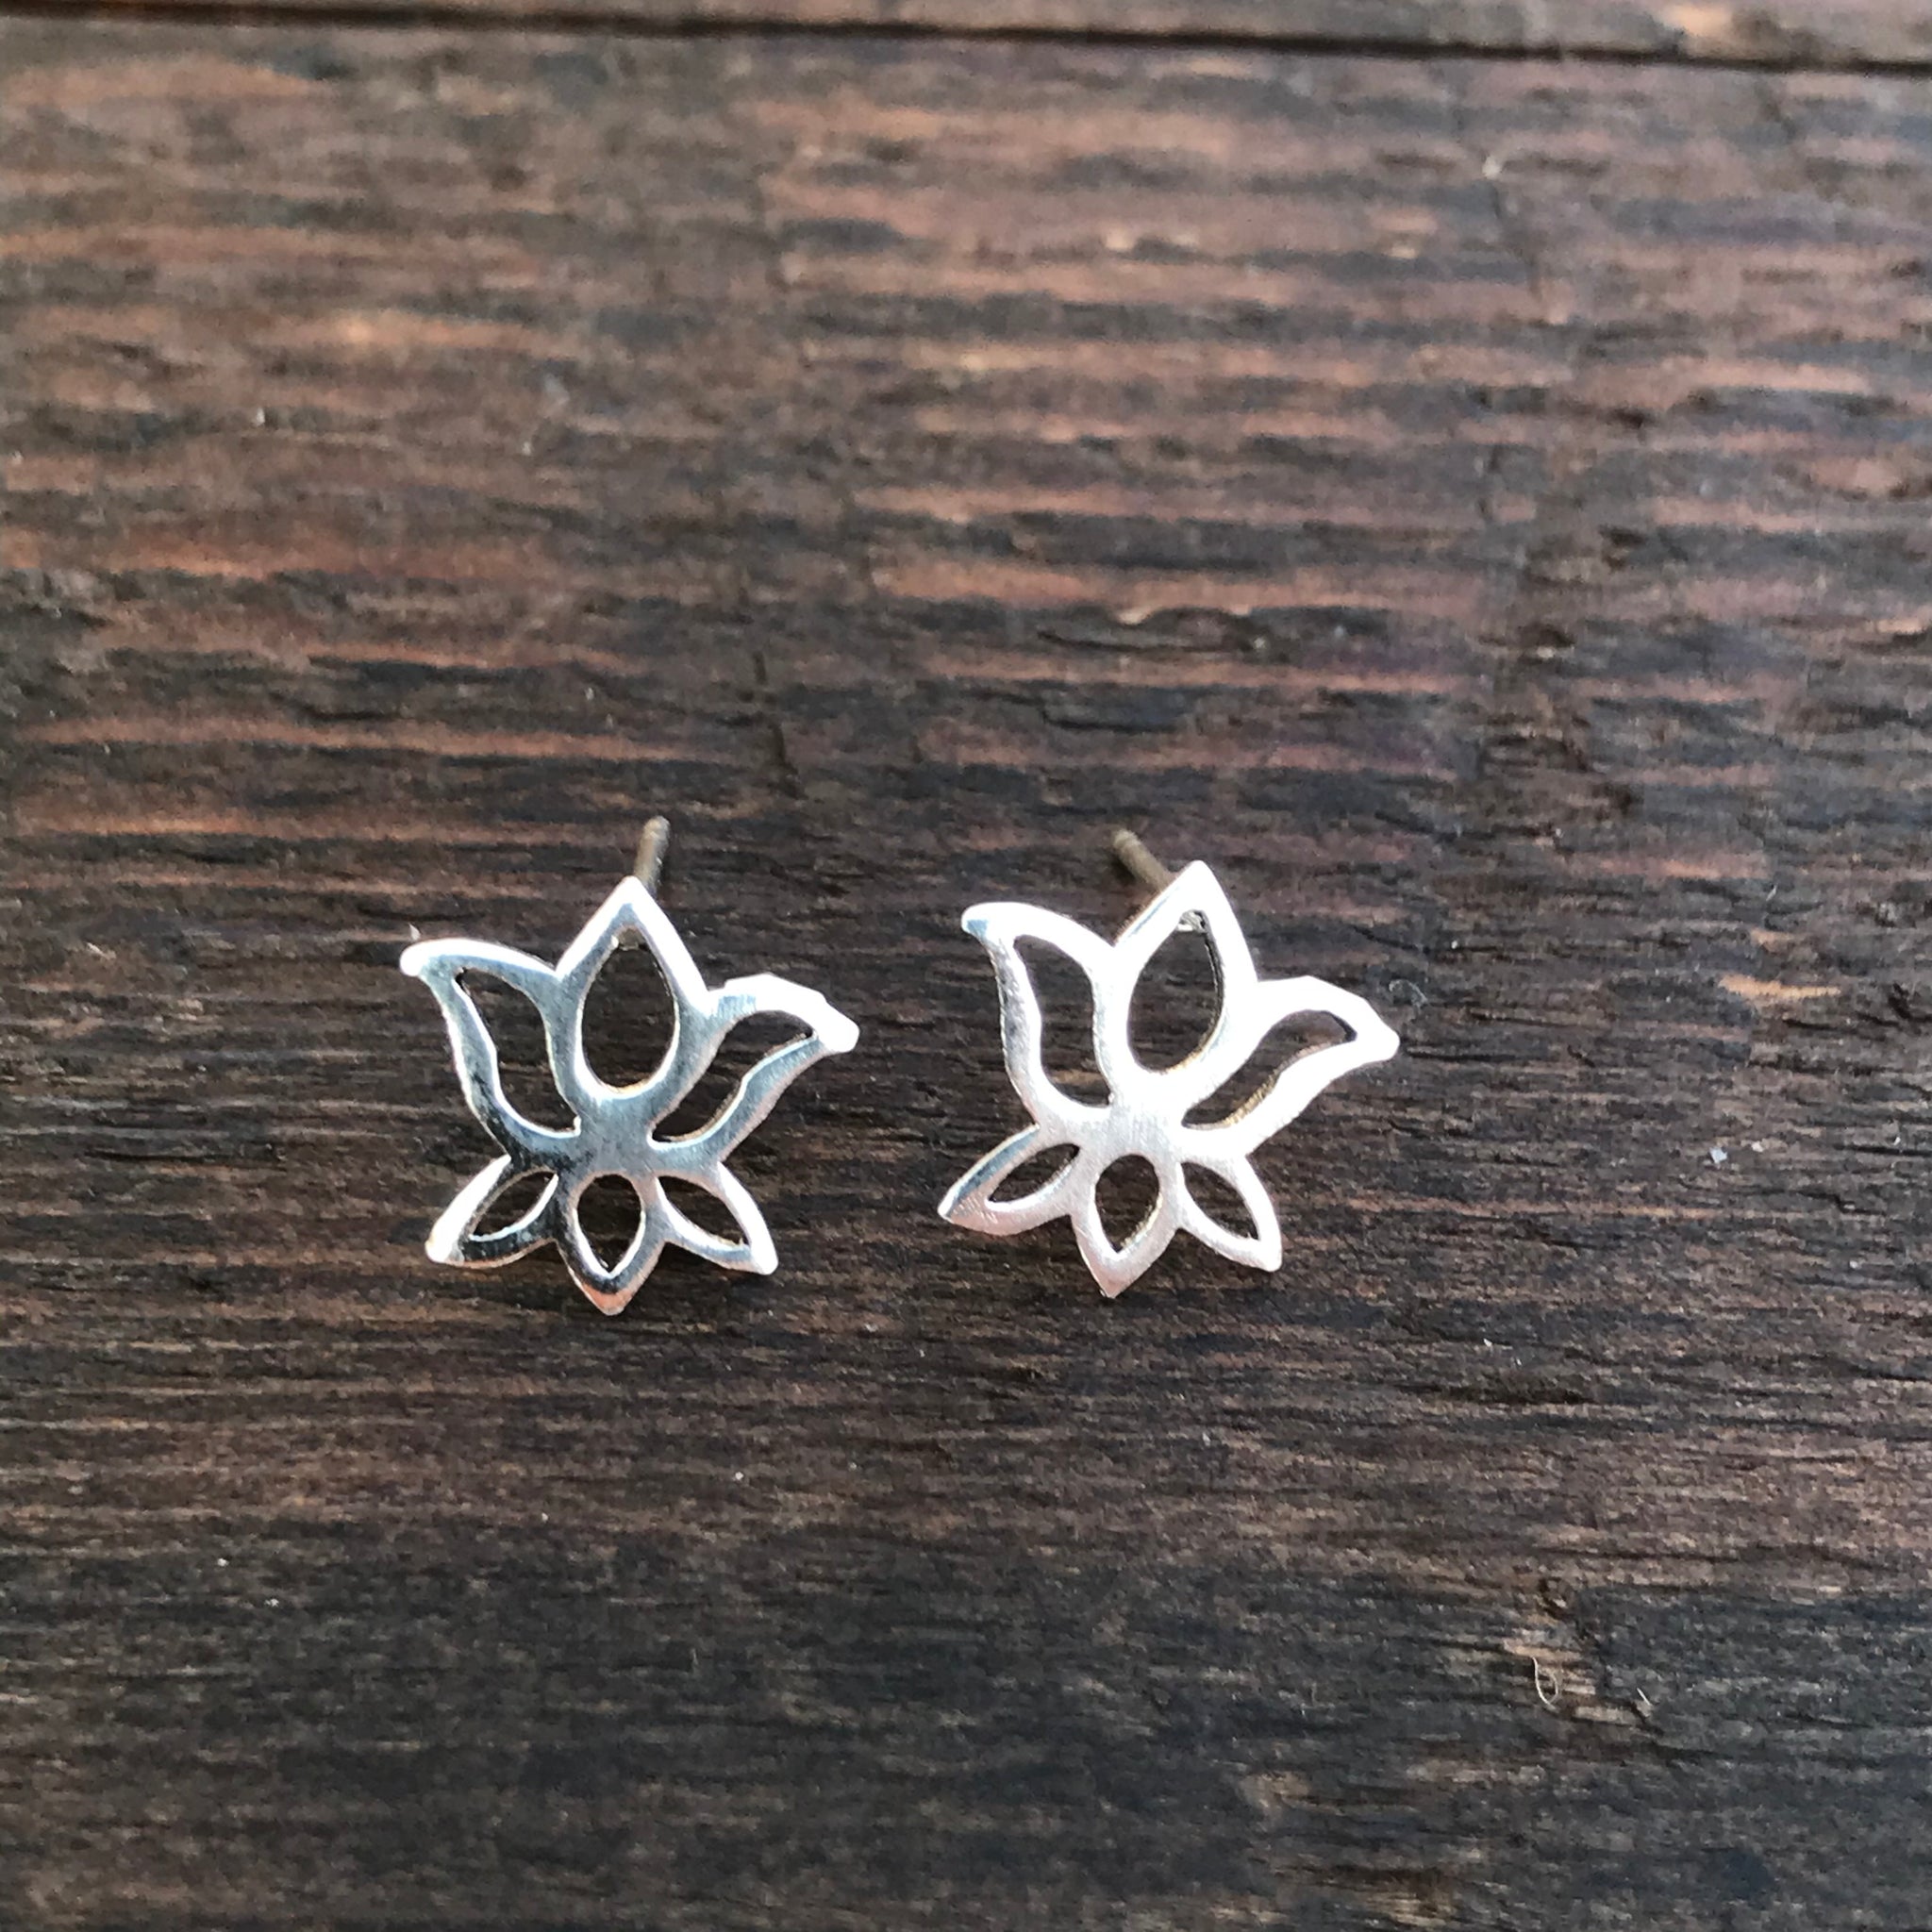 Sterling Silver 'Lotus Flower' Design Stud Earrings